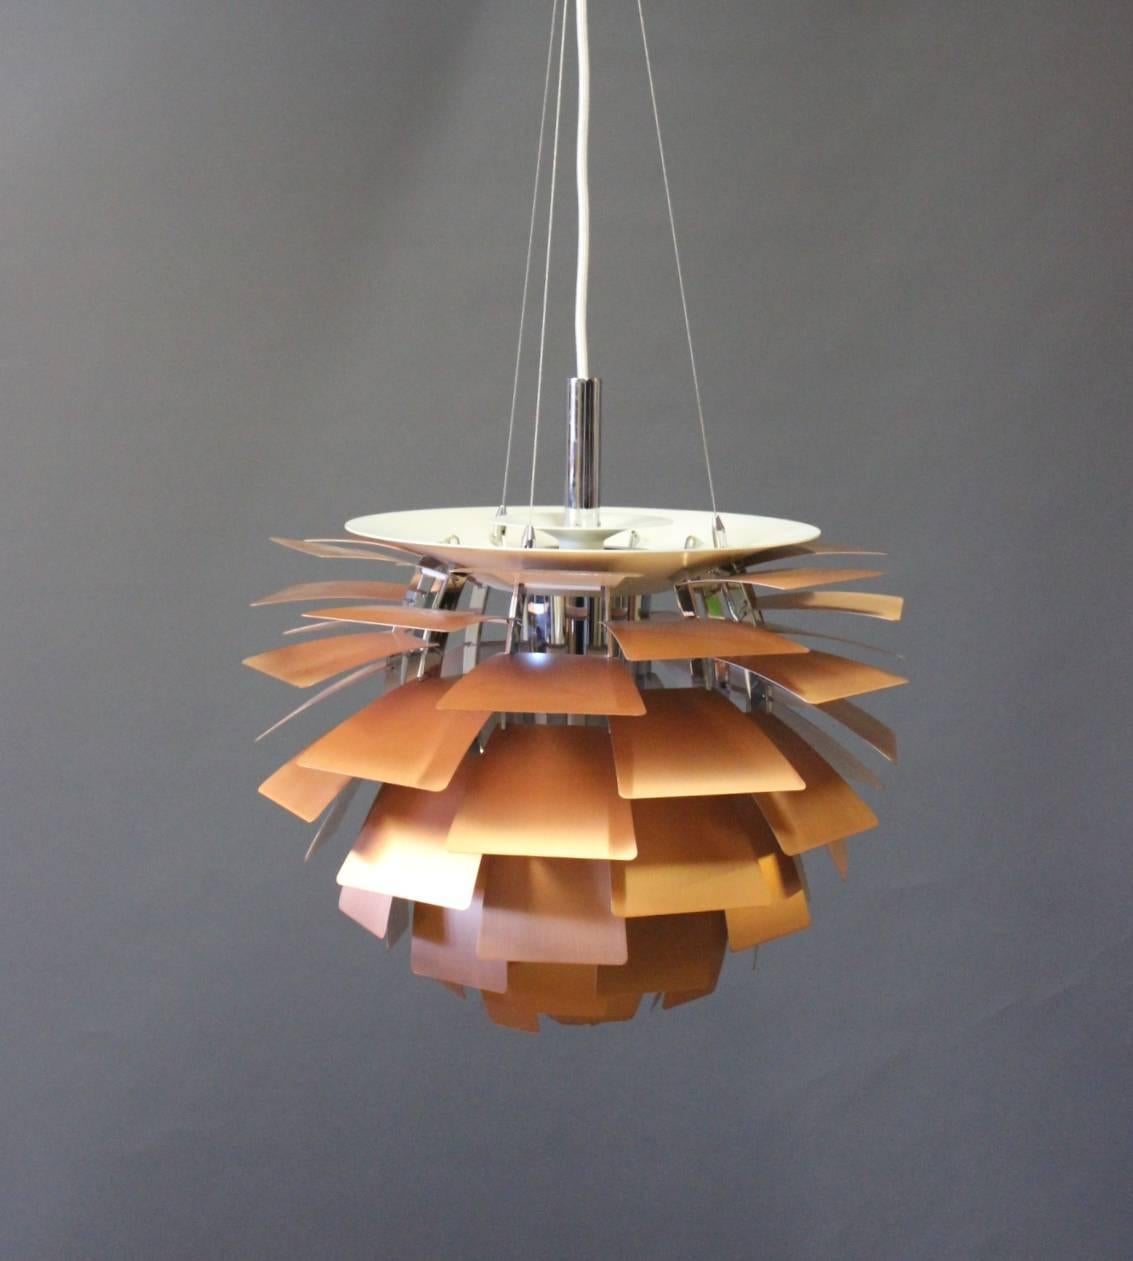 Le design de l'éclair attire tous les regards. Cette version en cuivre de l'artichaut de Poul Henningsen mesure 48 cm de diamètre. Cet article est donc très utilisable au-dessus d'une table à manger.